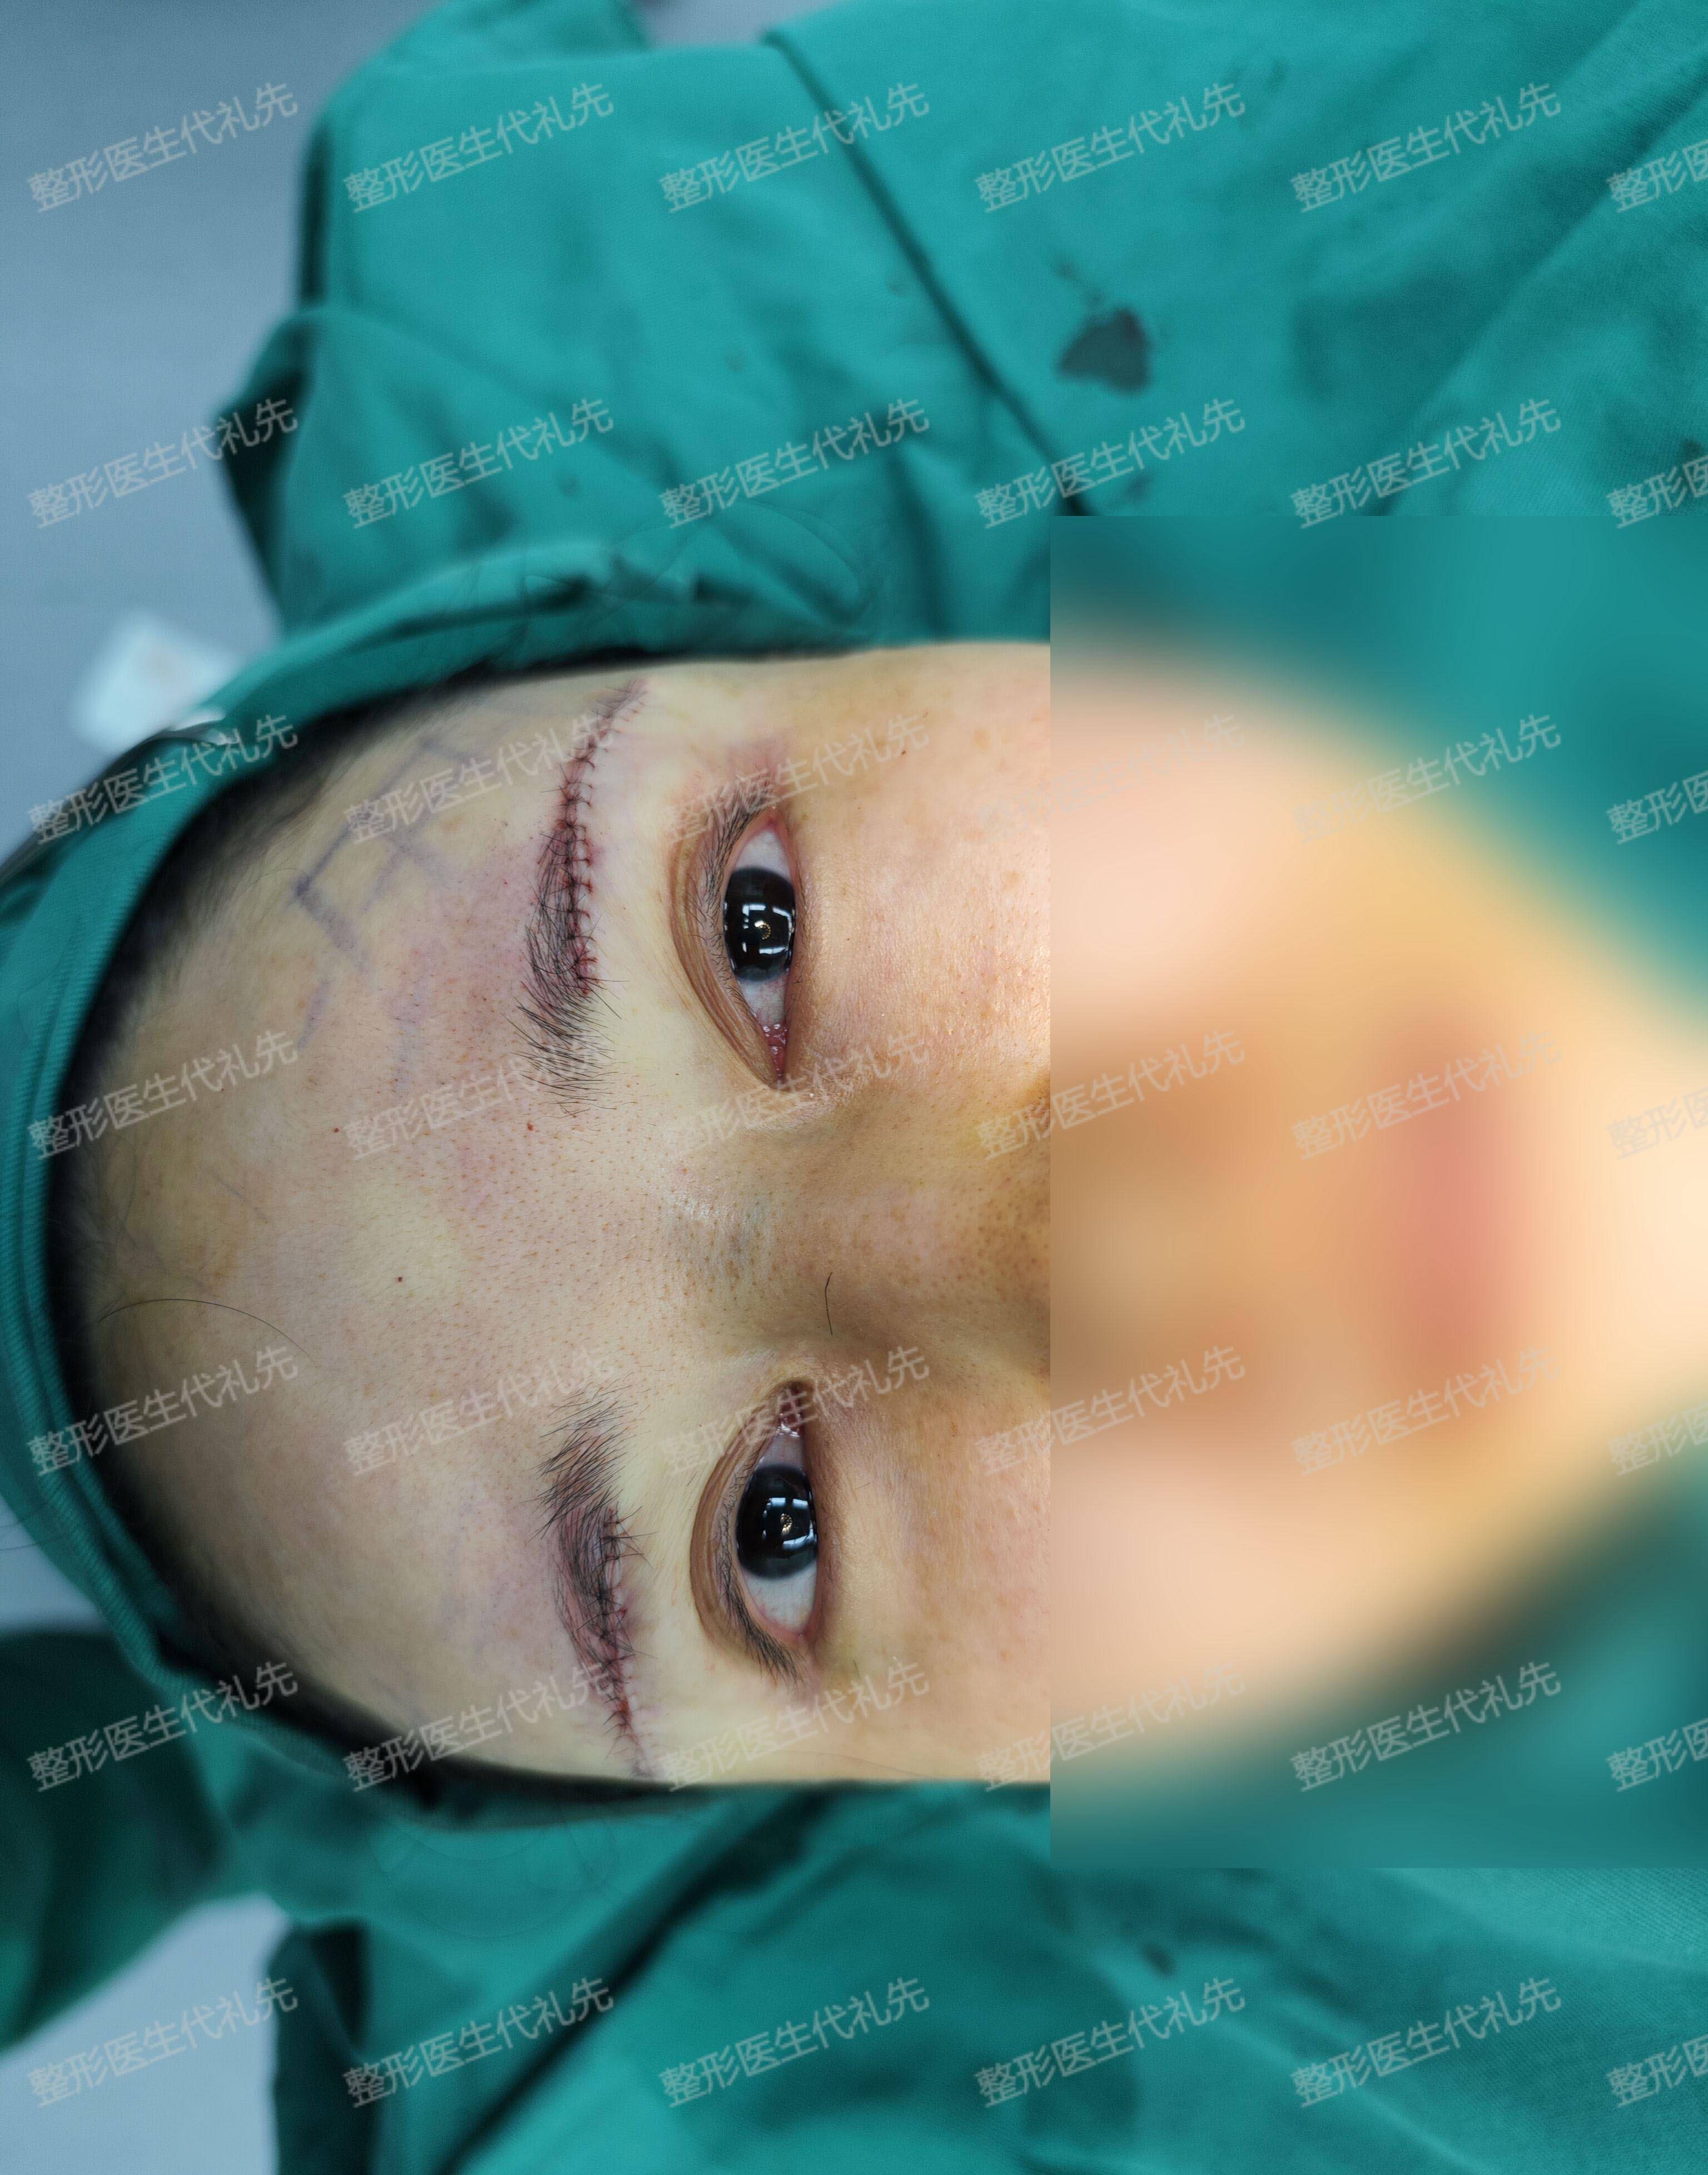 43岁女士来北京做了筋膜悬吊提眉手术,术后2周高清照片对比